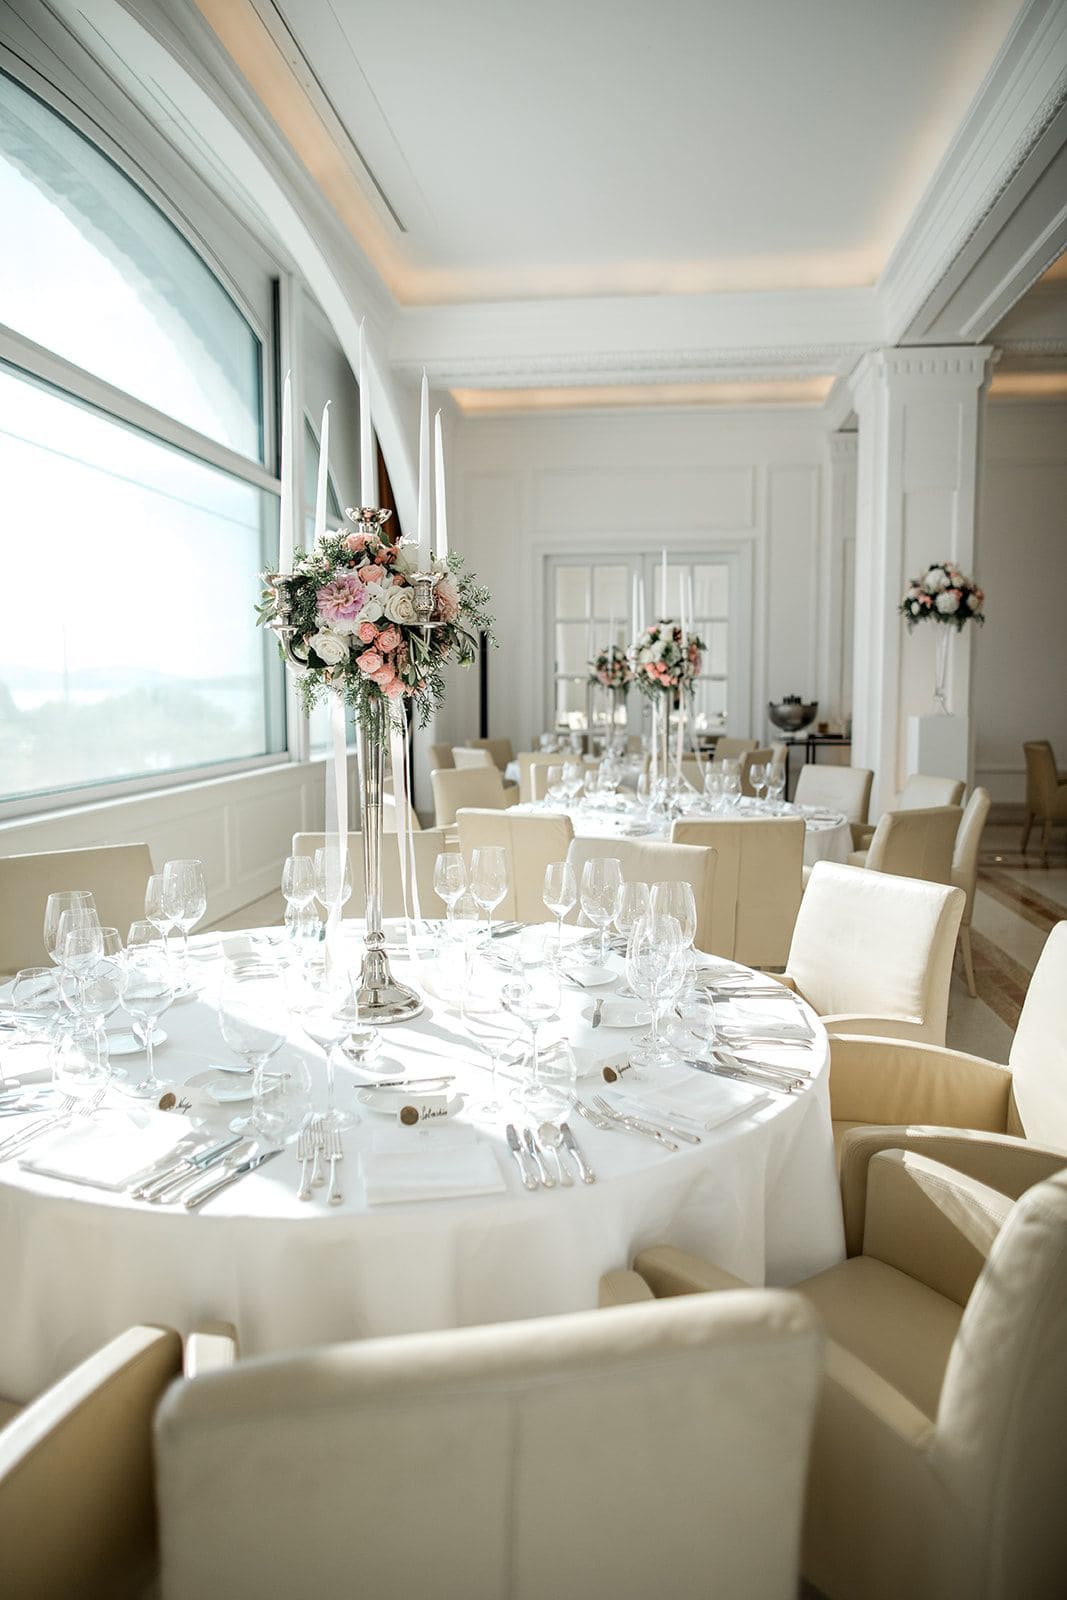 Park Hotel Lucerne Switzerland wedding reception details